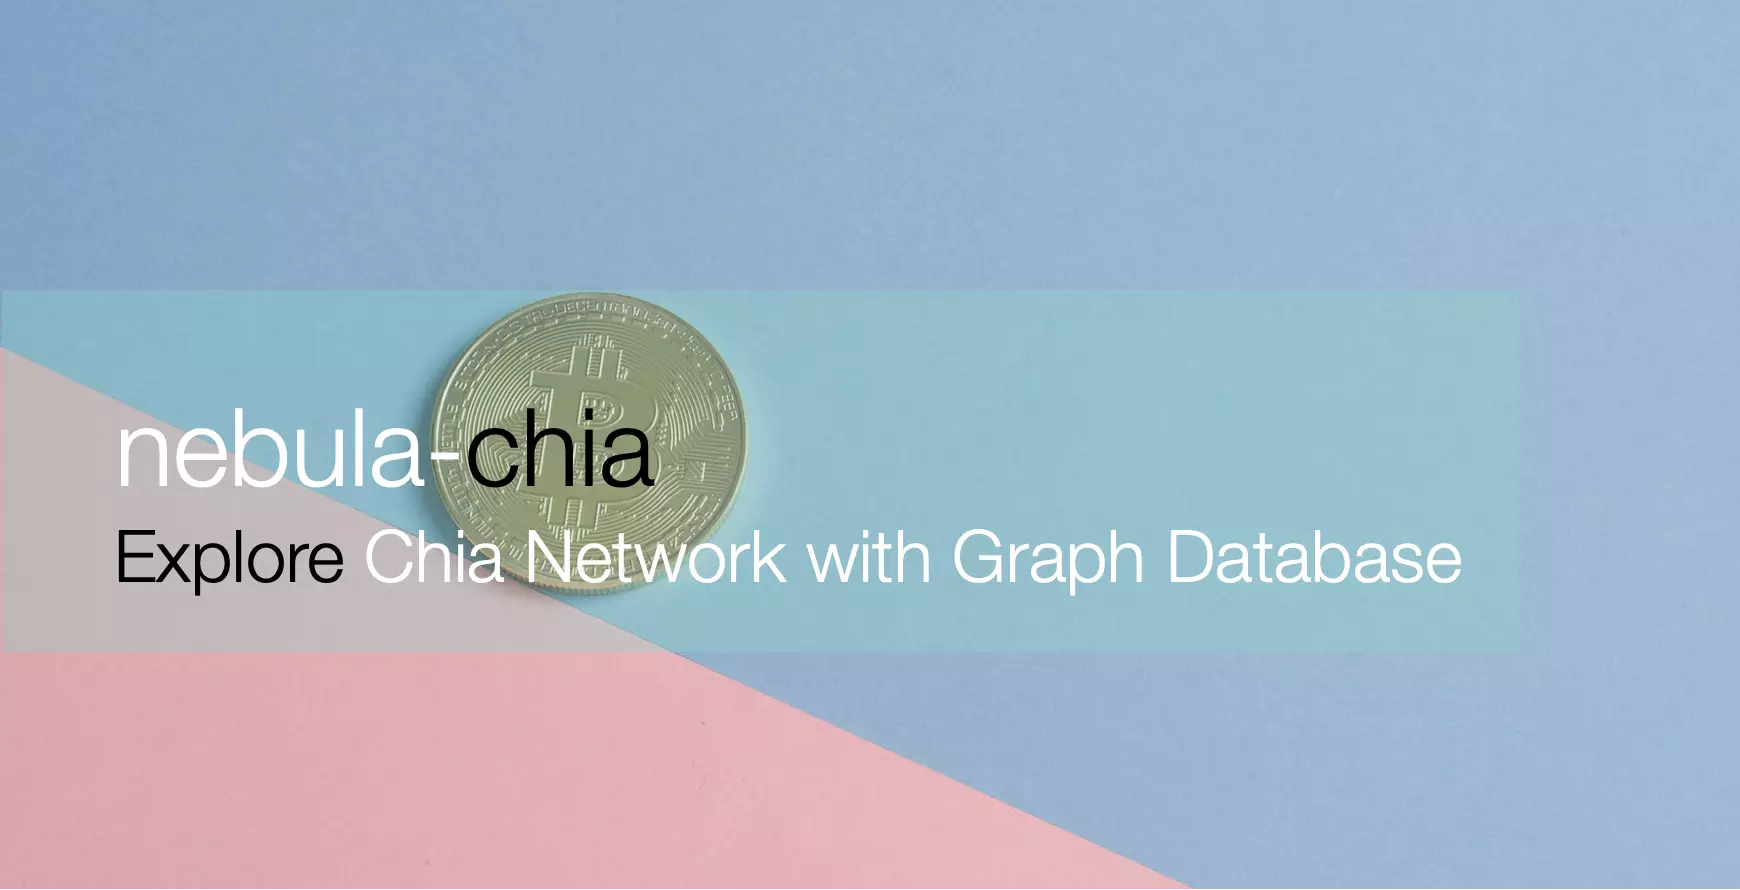 本文作者分析了 Chia Network 的全链数据，并做了将全链数据导入图数据库：Nebula Graph 之中的尝试，从而可视化地探索了 Chia 图中数据之间的关联关系。